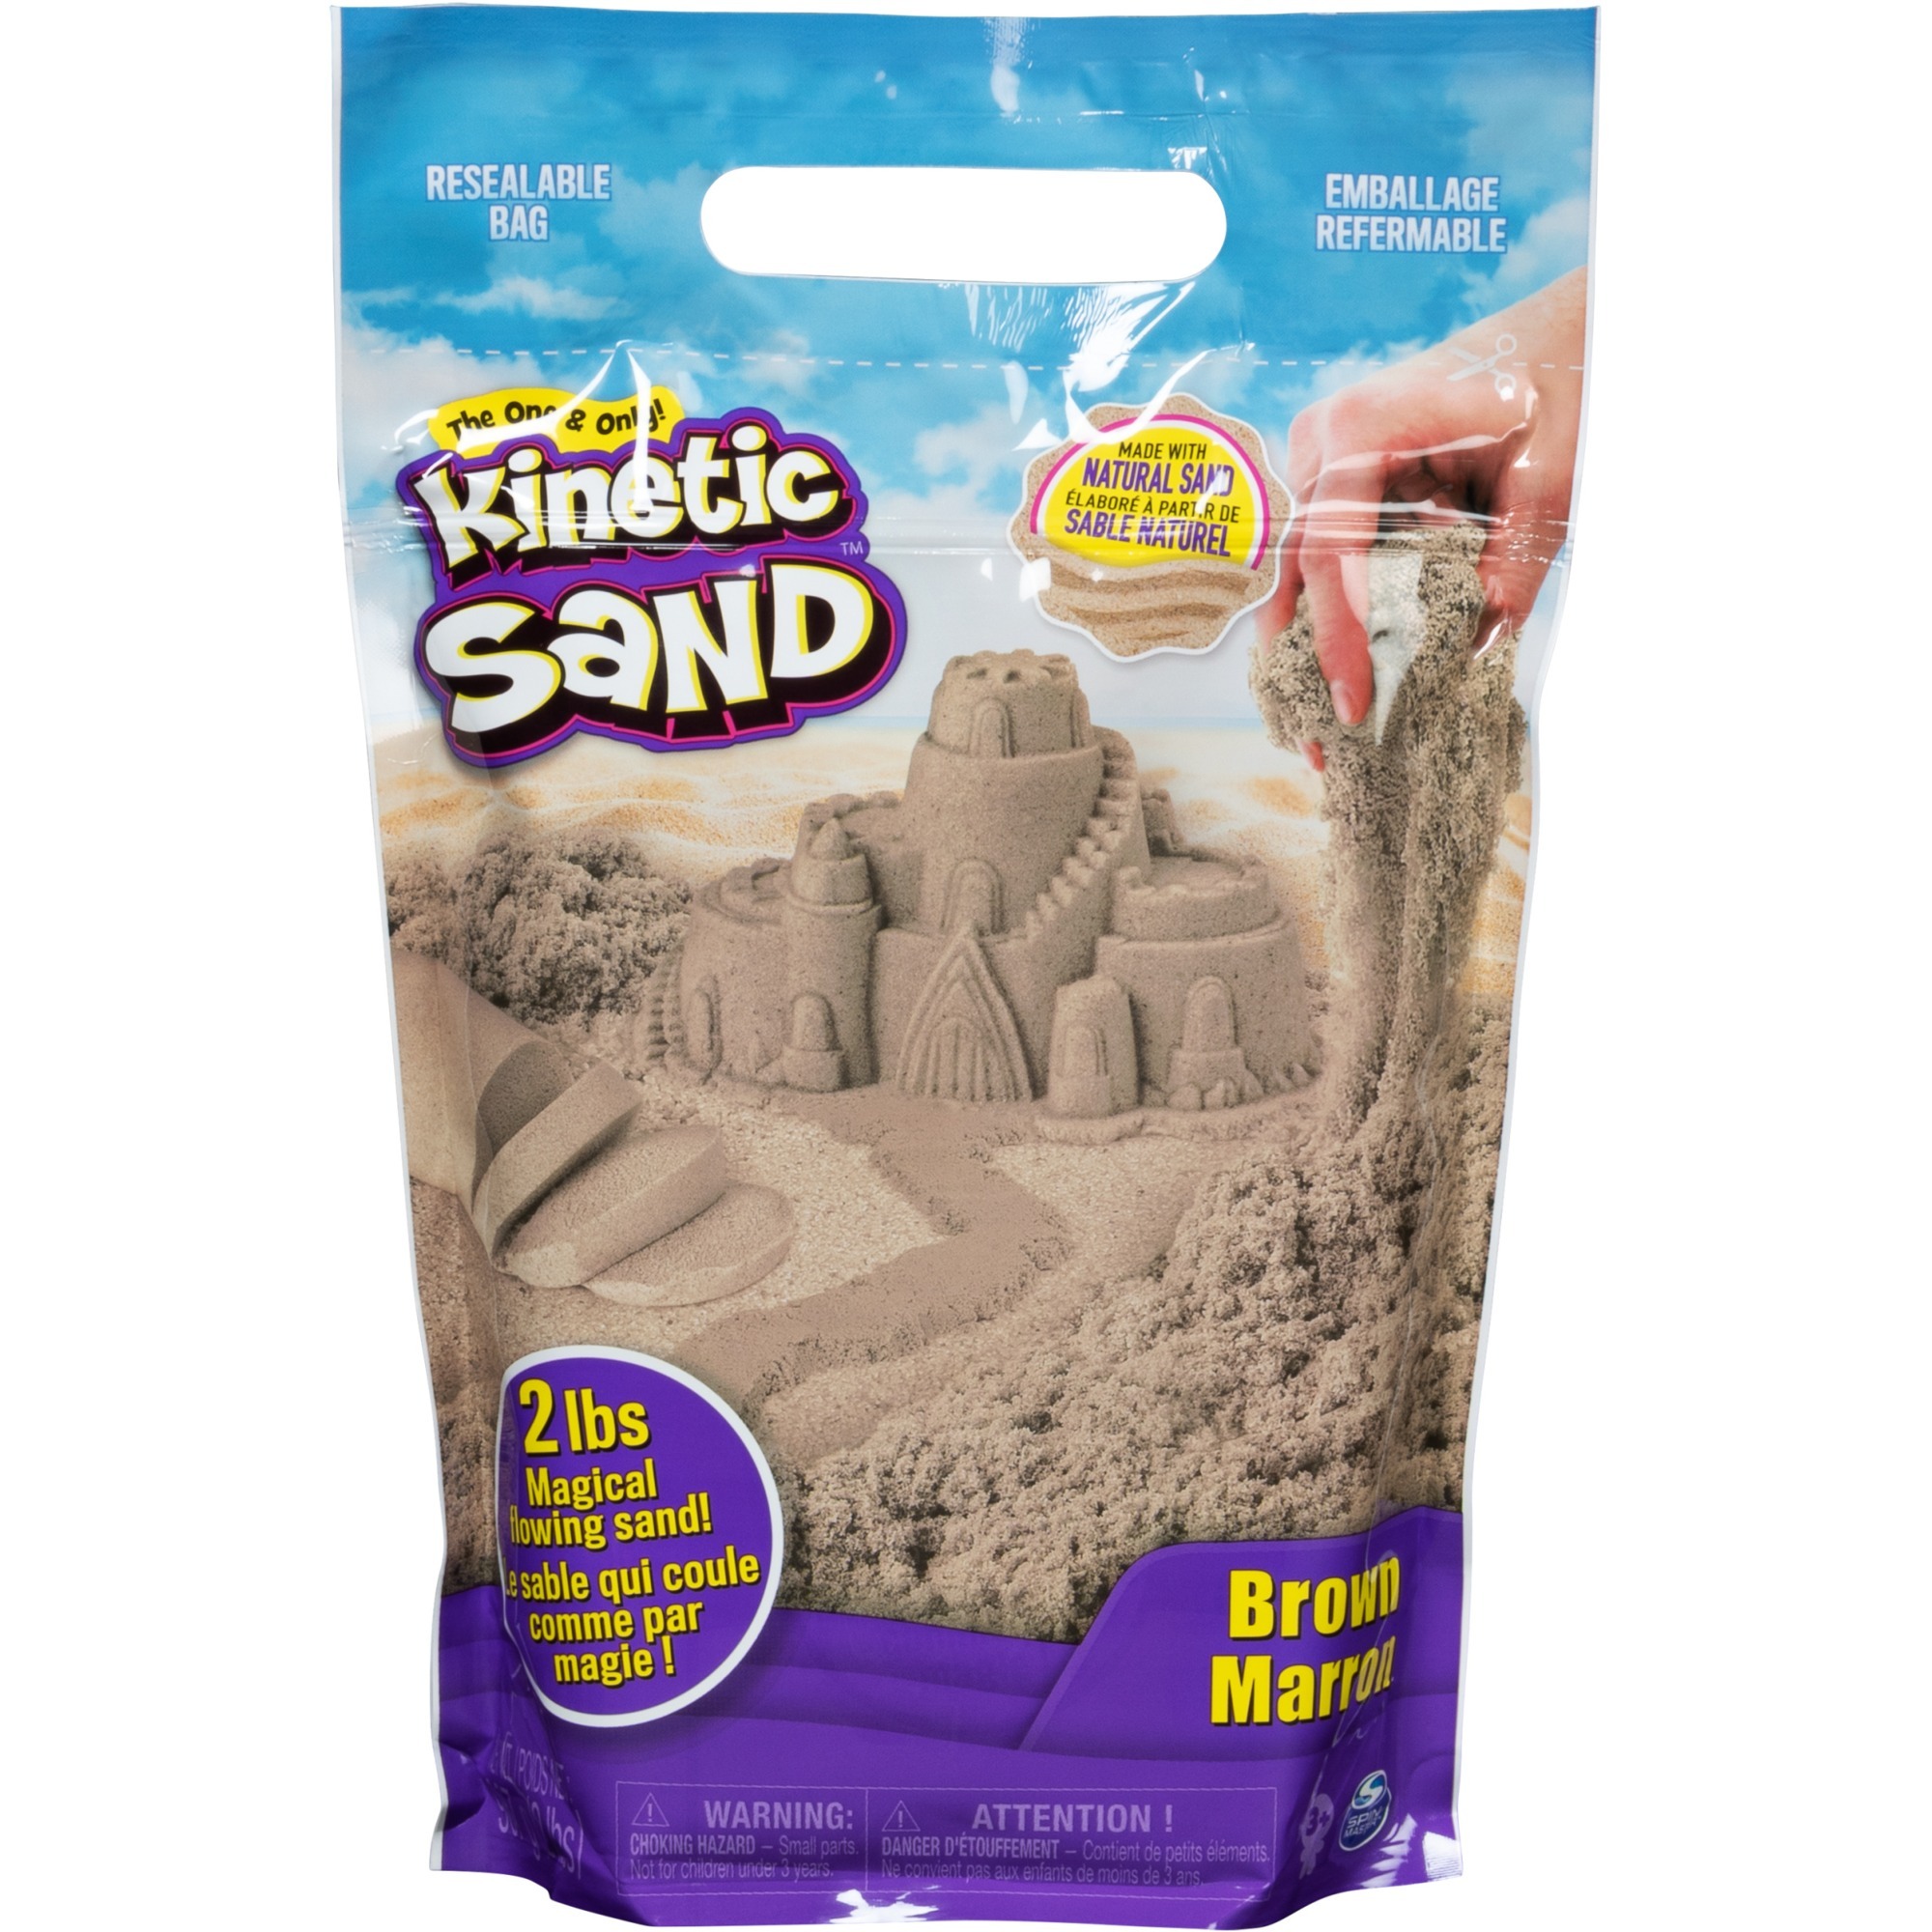 Image of Alternate - Kinetic Sand - braun 907 g, Spielsand online einkaufen bei Alternate